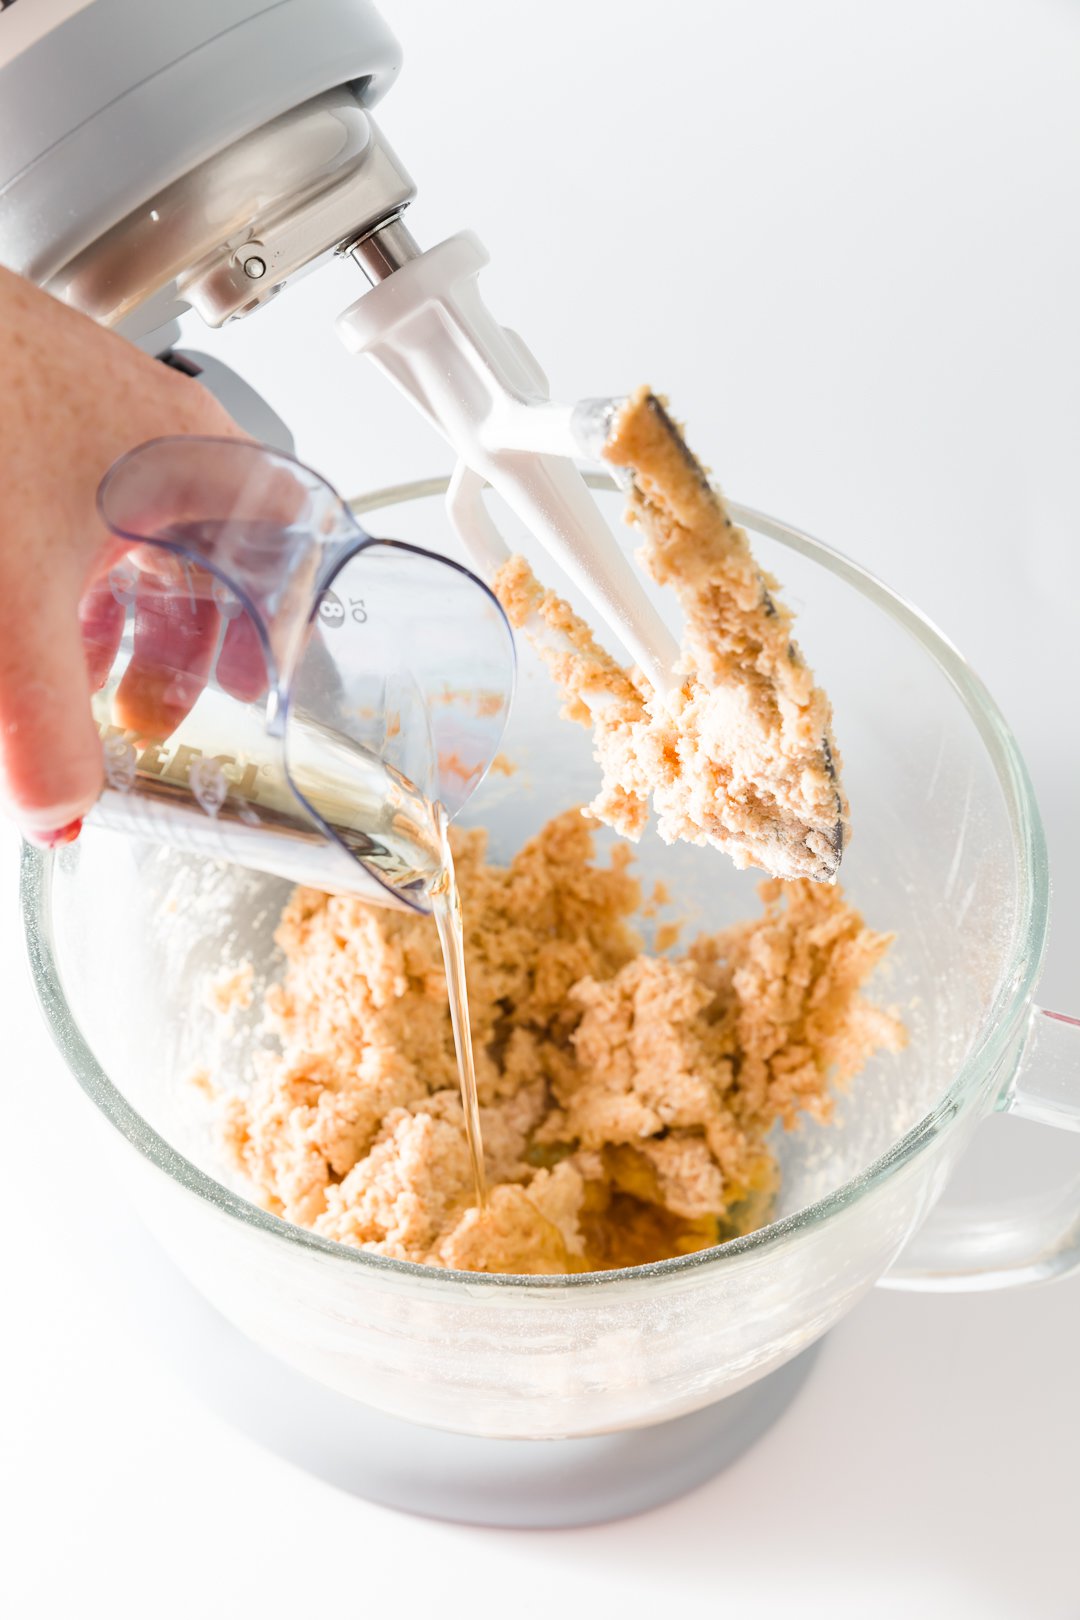 Agregar aceite de maní a los pastelitos de mantequilla de maní